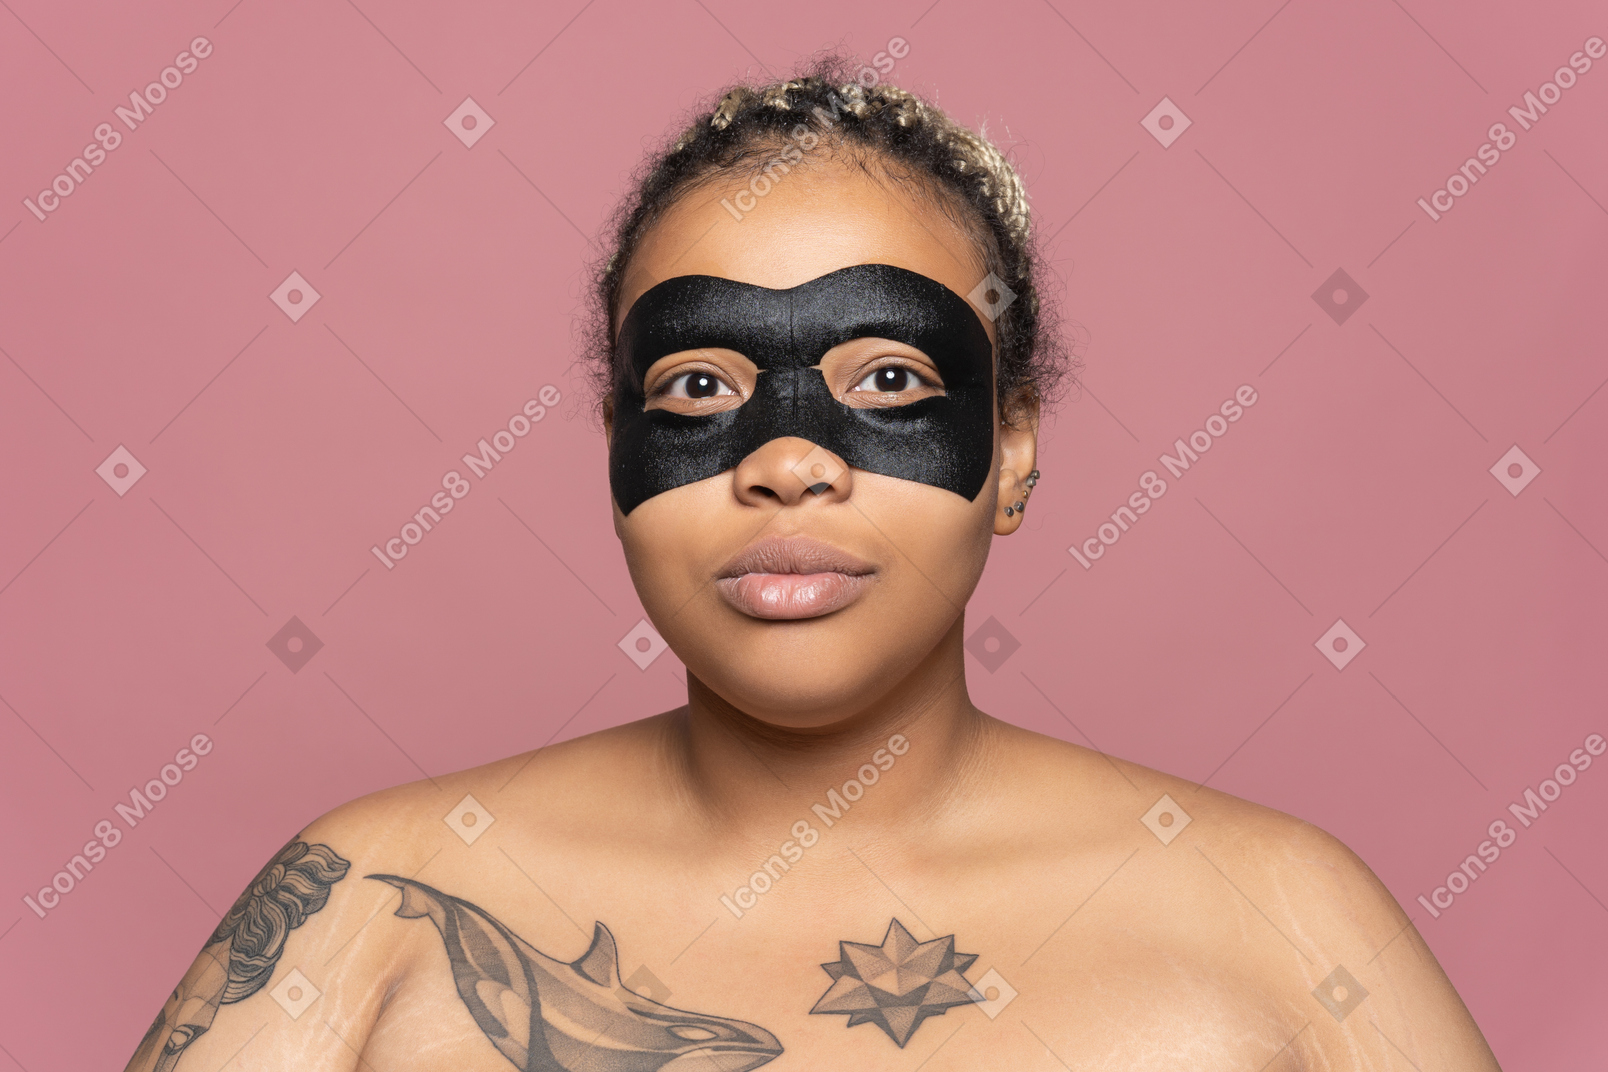 Woman using a black eye mask